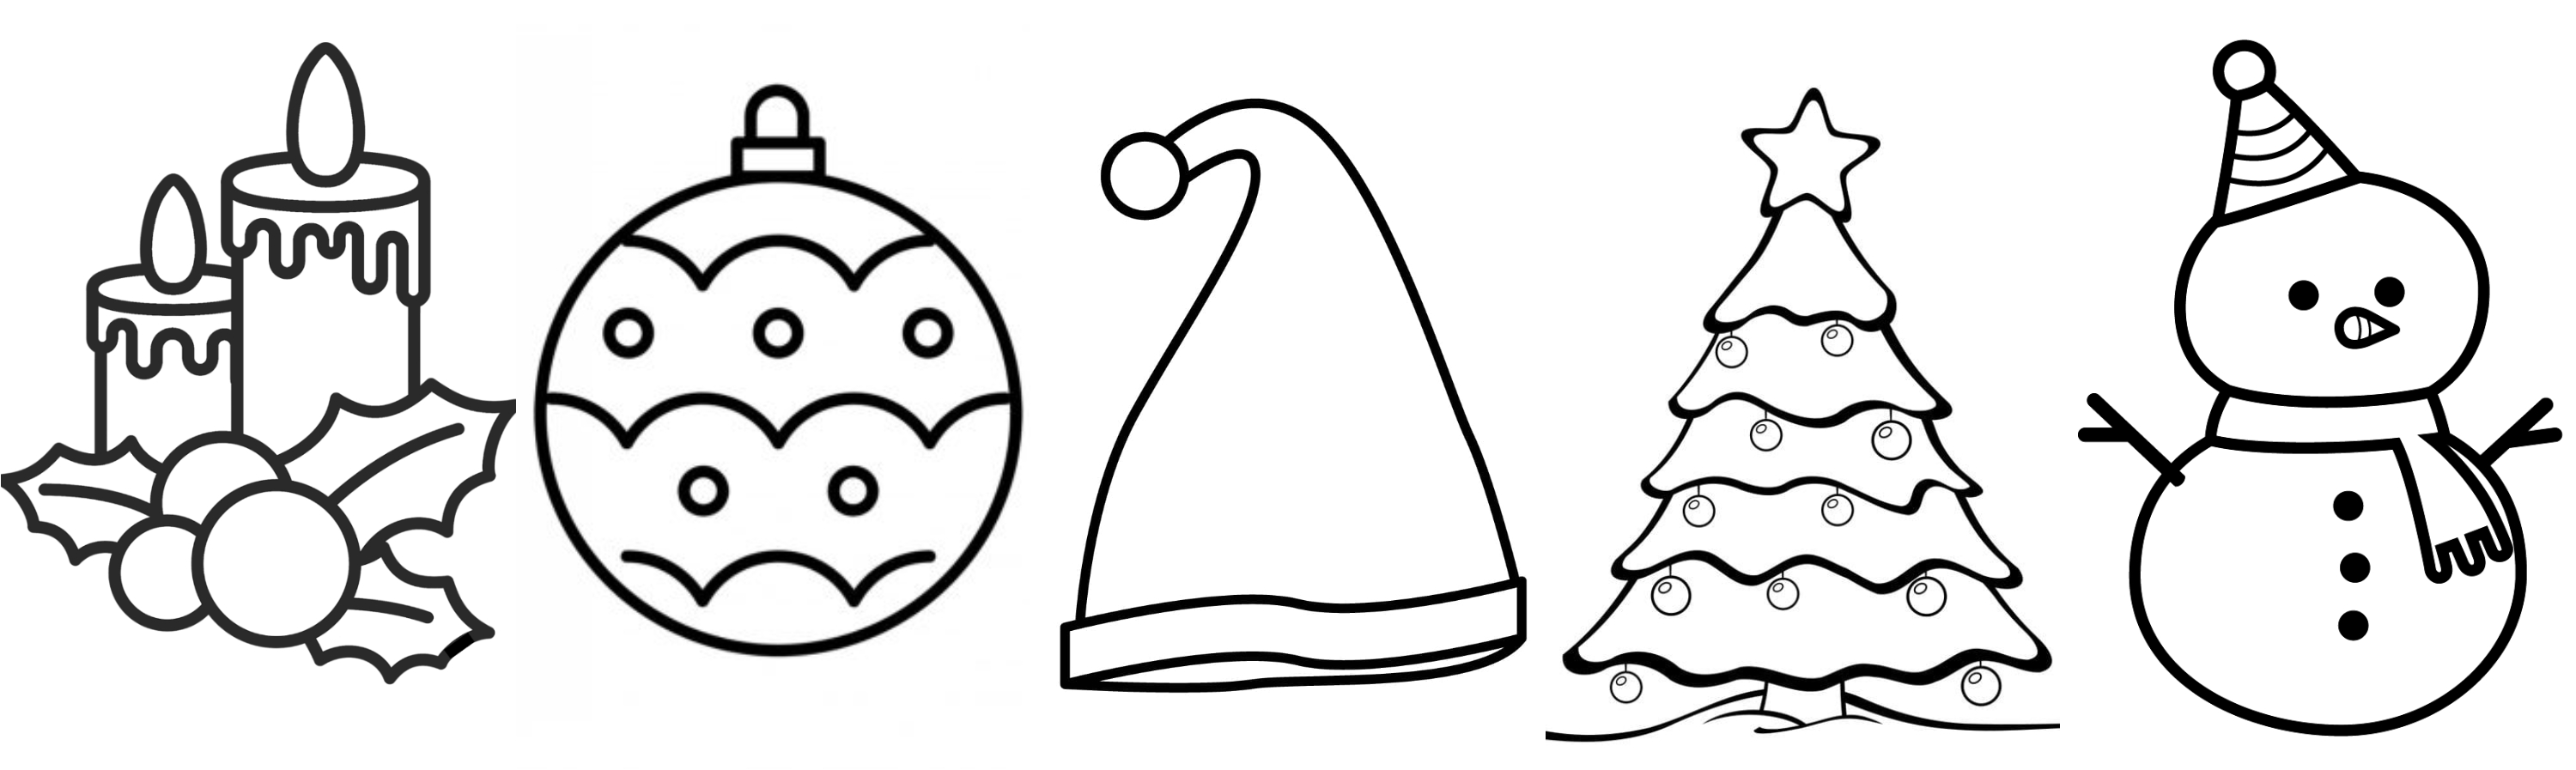 10 ideas de dibujos fáciles para hacer de Navidad